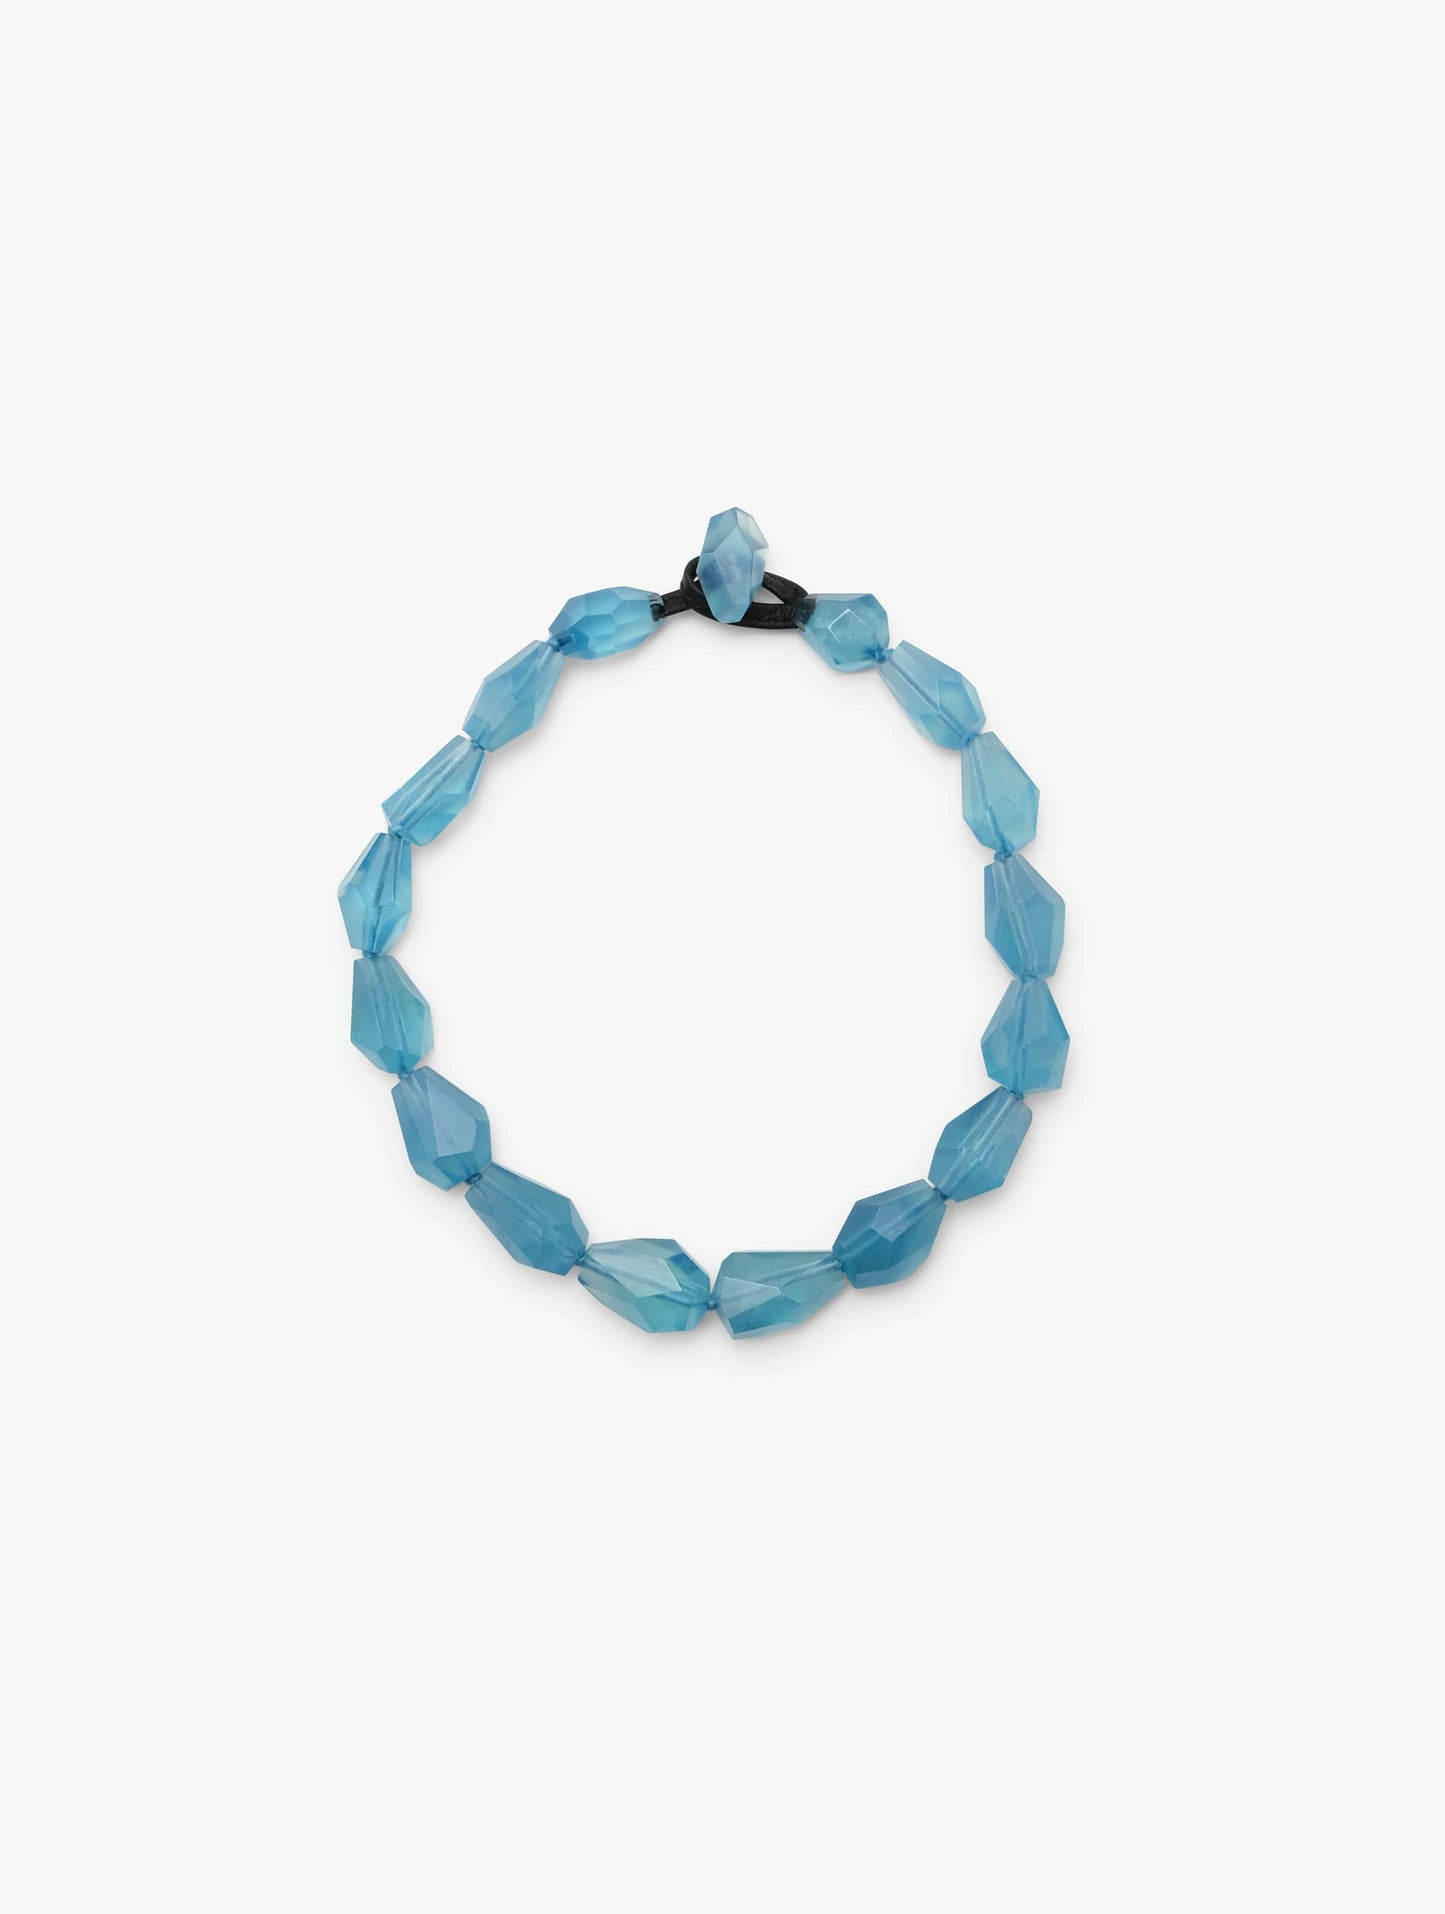 Necklace: aquamarine